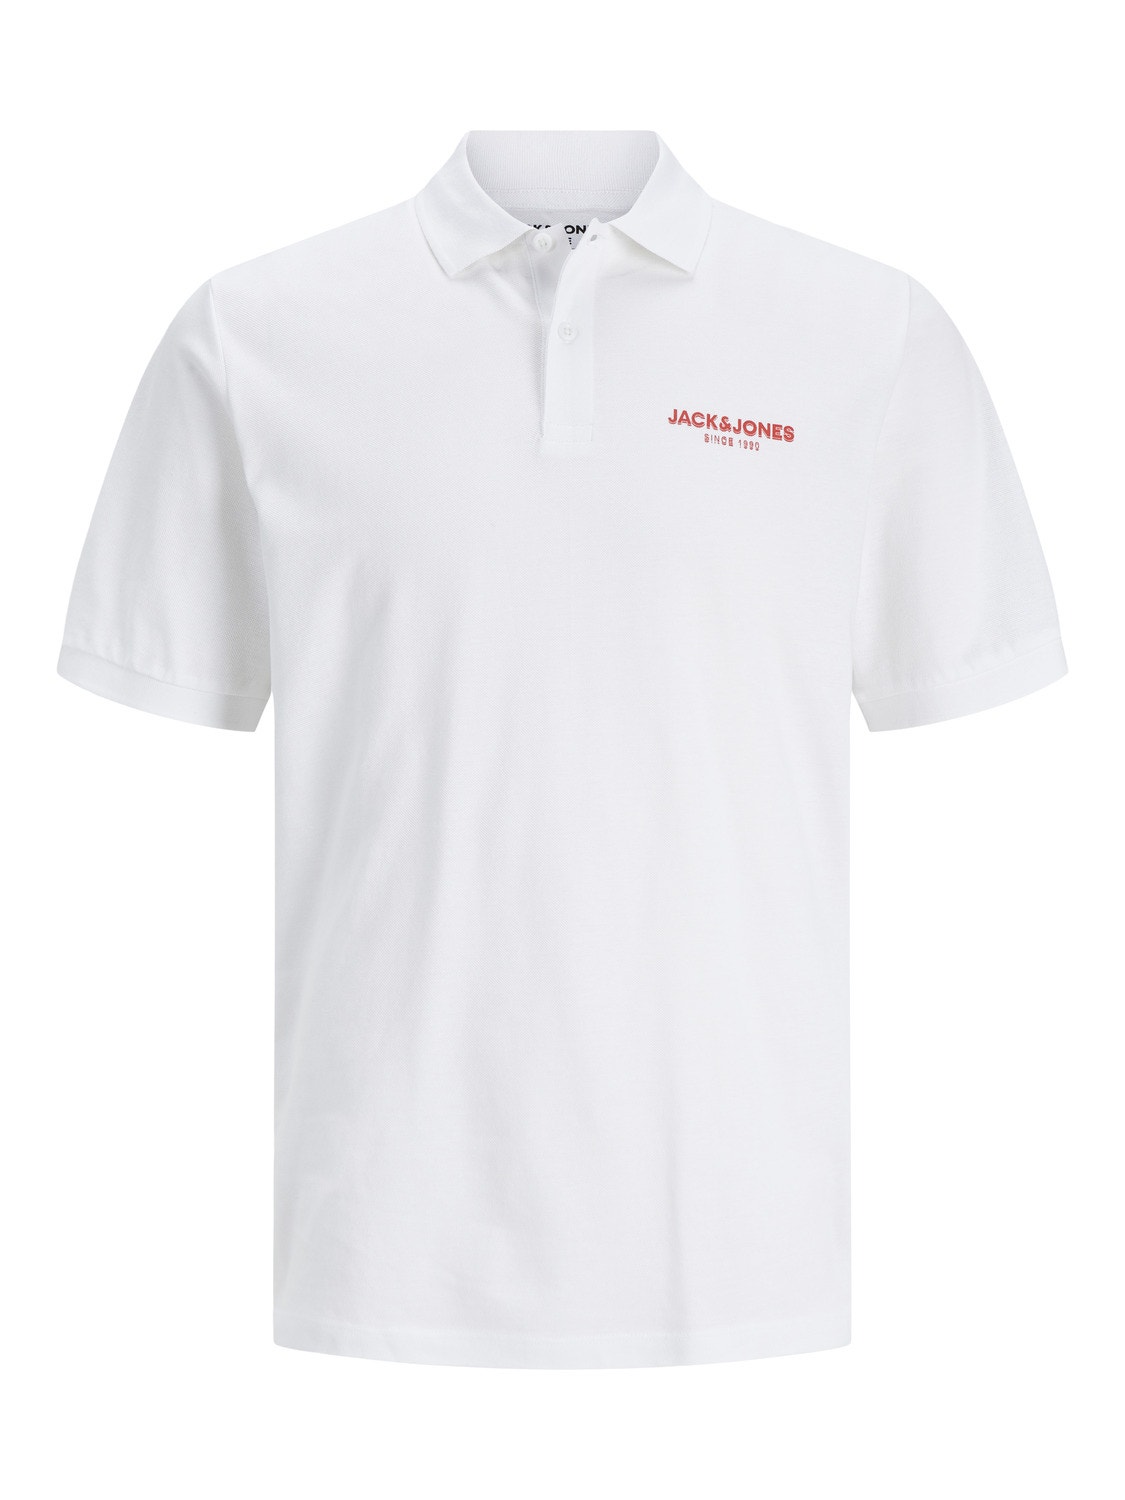 Logo Shirt collar T-shirt with 30% discount! | Jack & Jones®